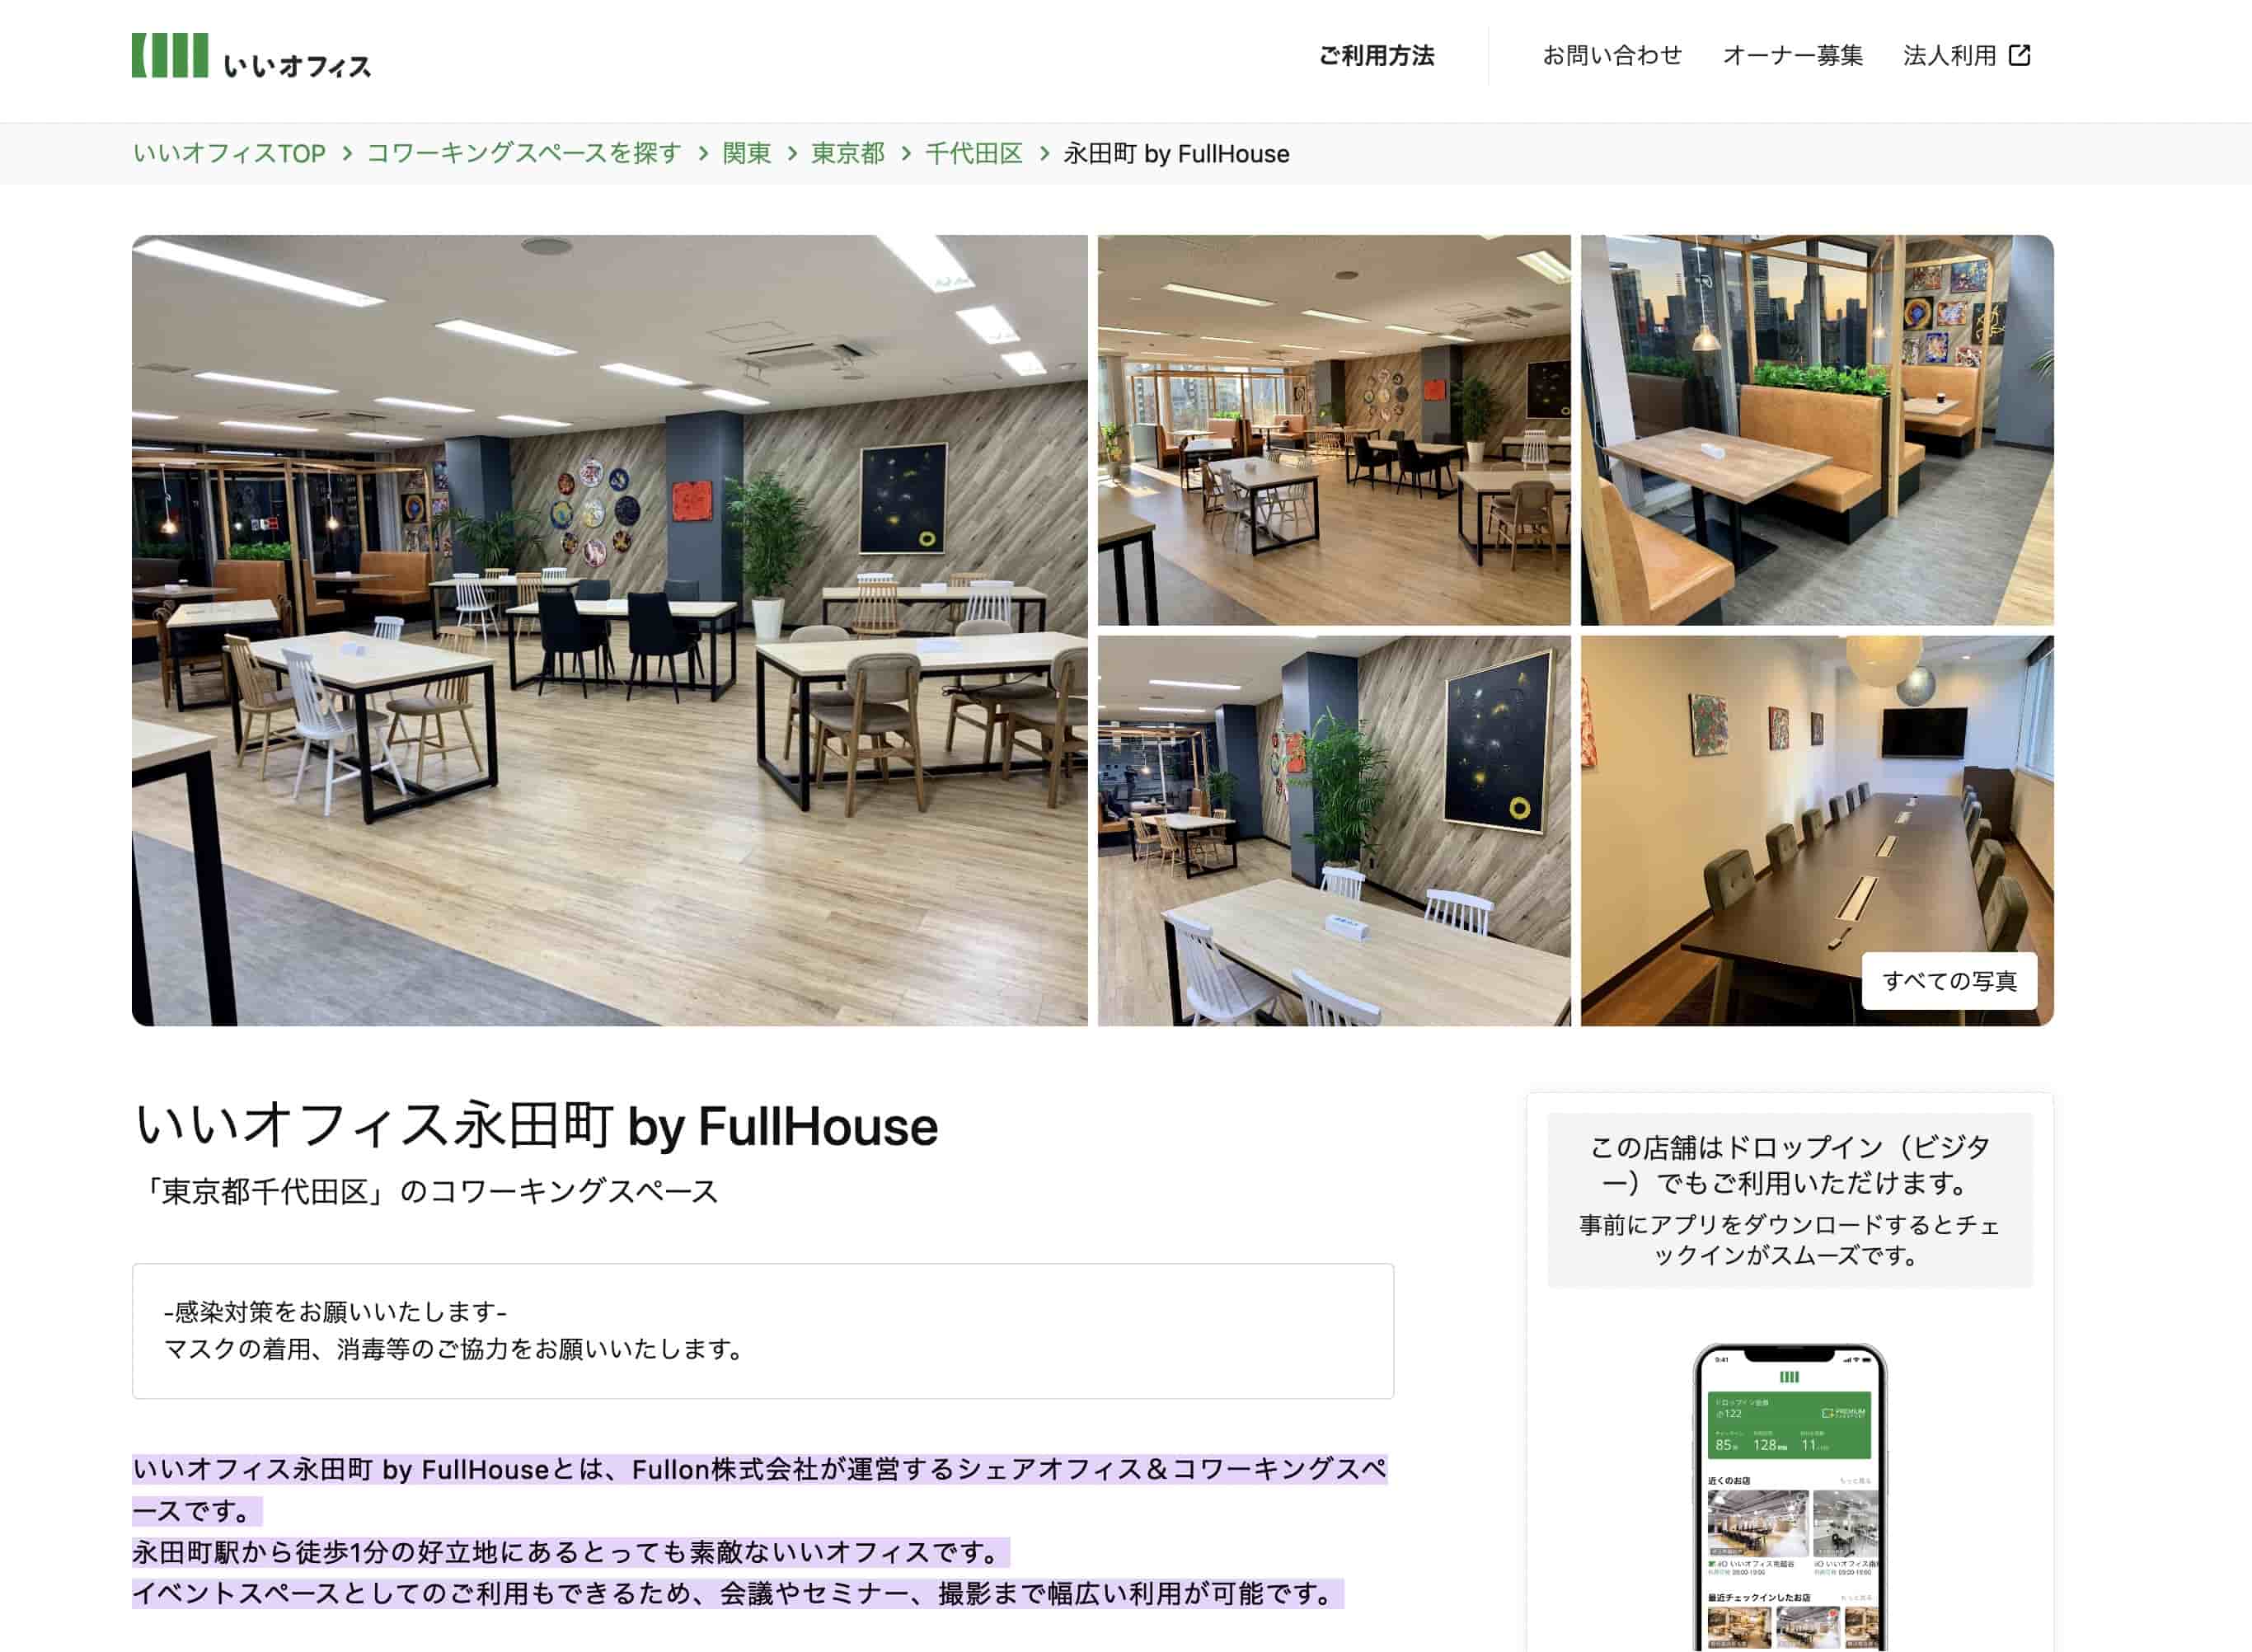 いいオフィス永田町 by FullHouse